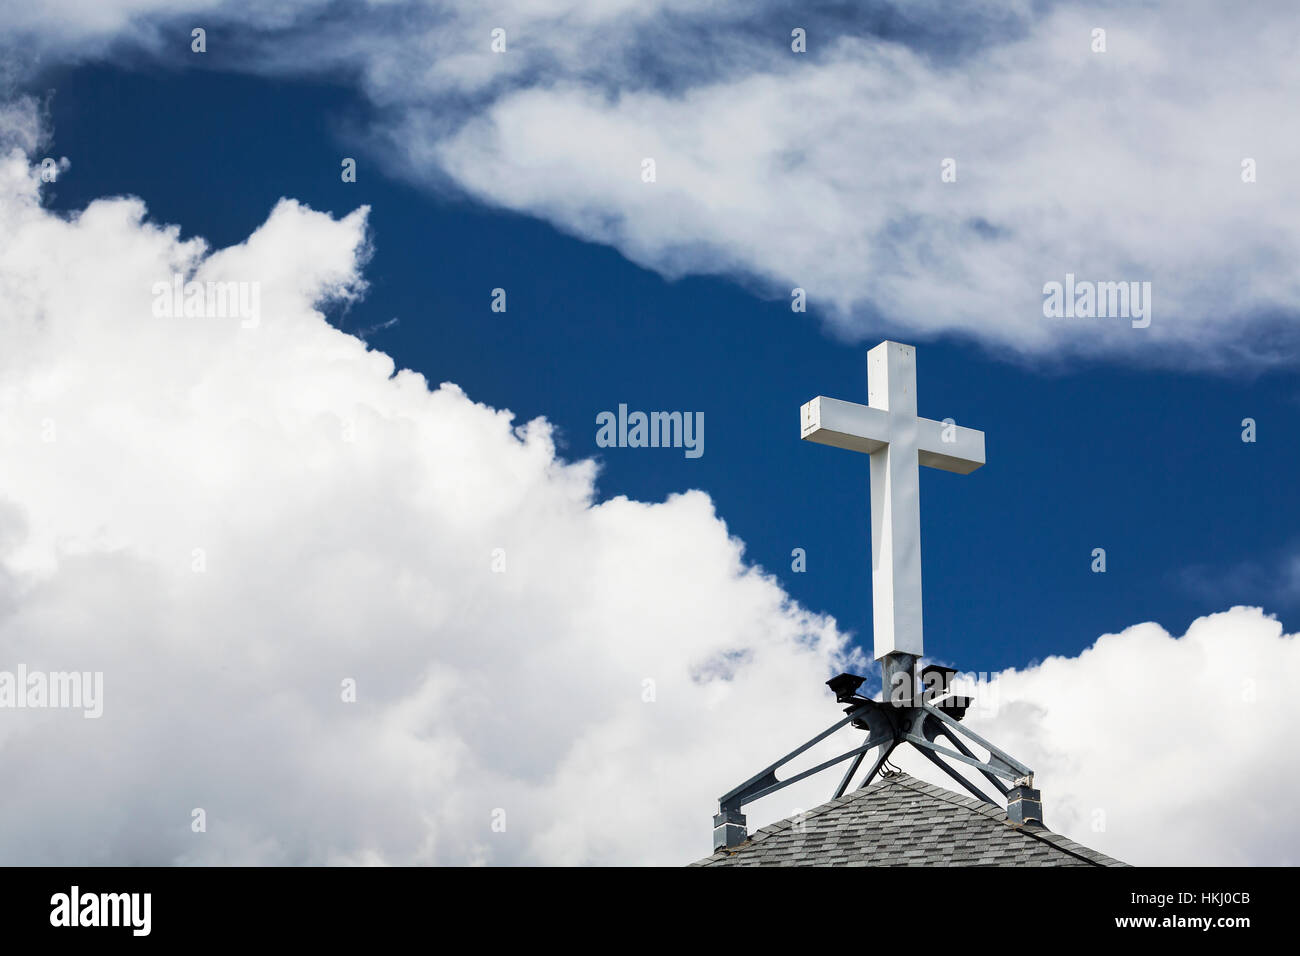 Weisses Kreuz auf einem Gipfel Dach mit tiefblauen Himmel und weiße Wolken; Calgary, Alberta, Kanada Stockfoto